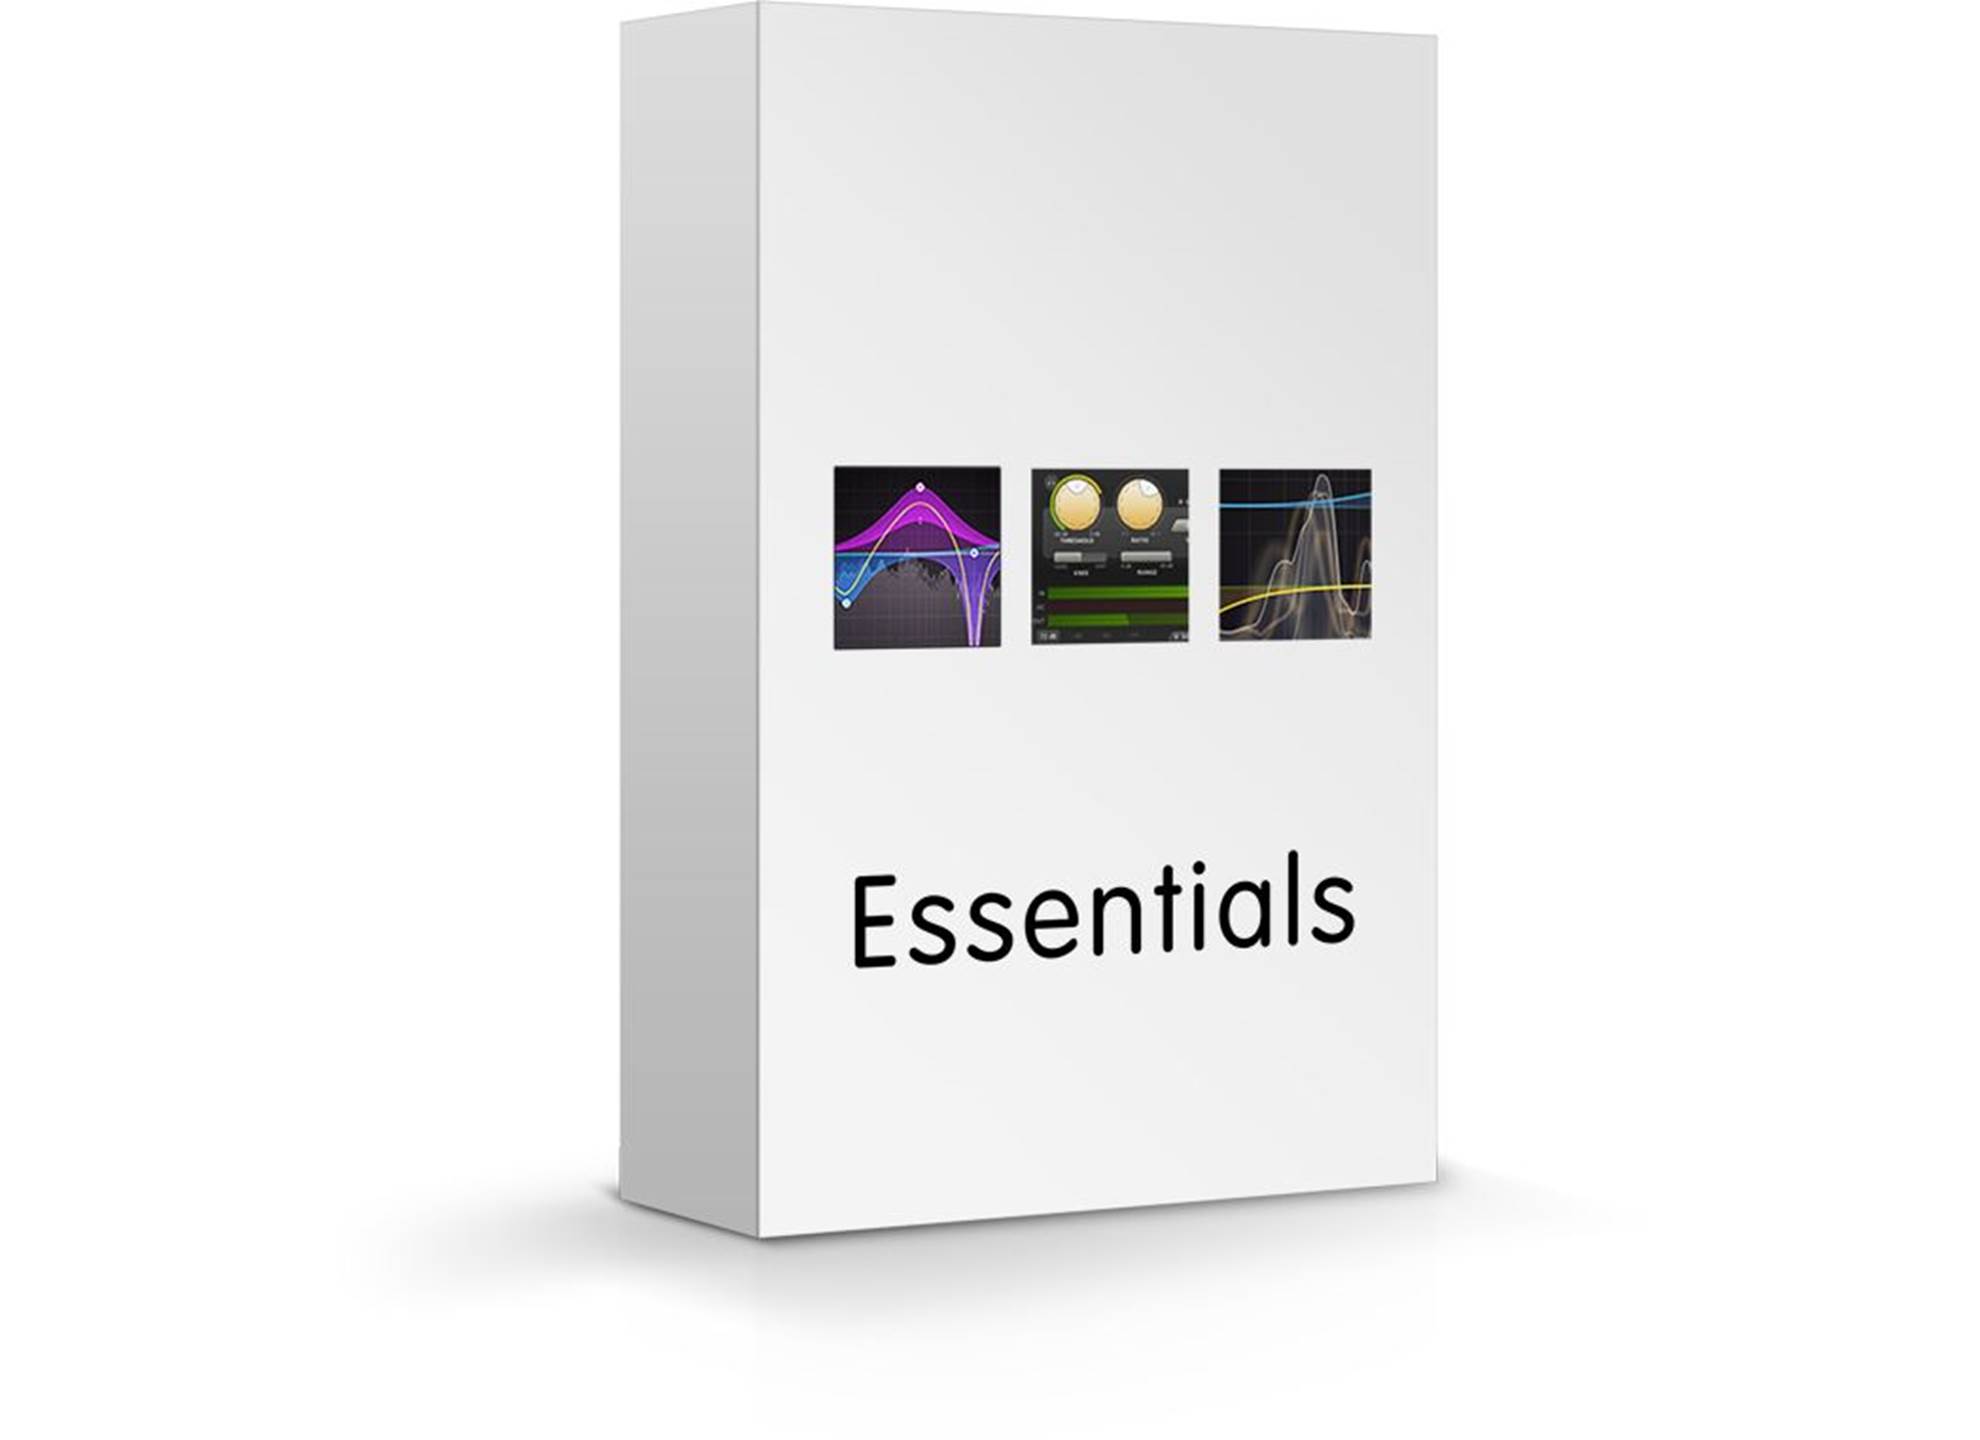 Essentials Bundle